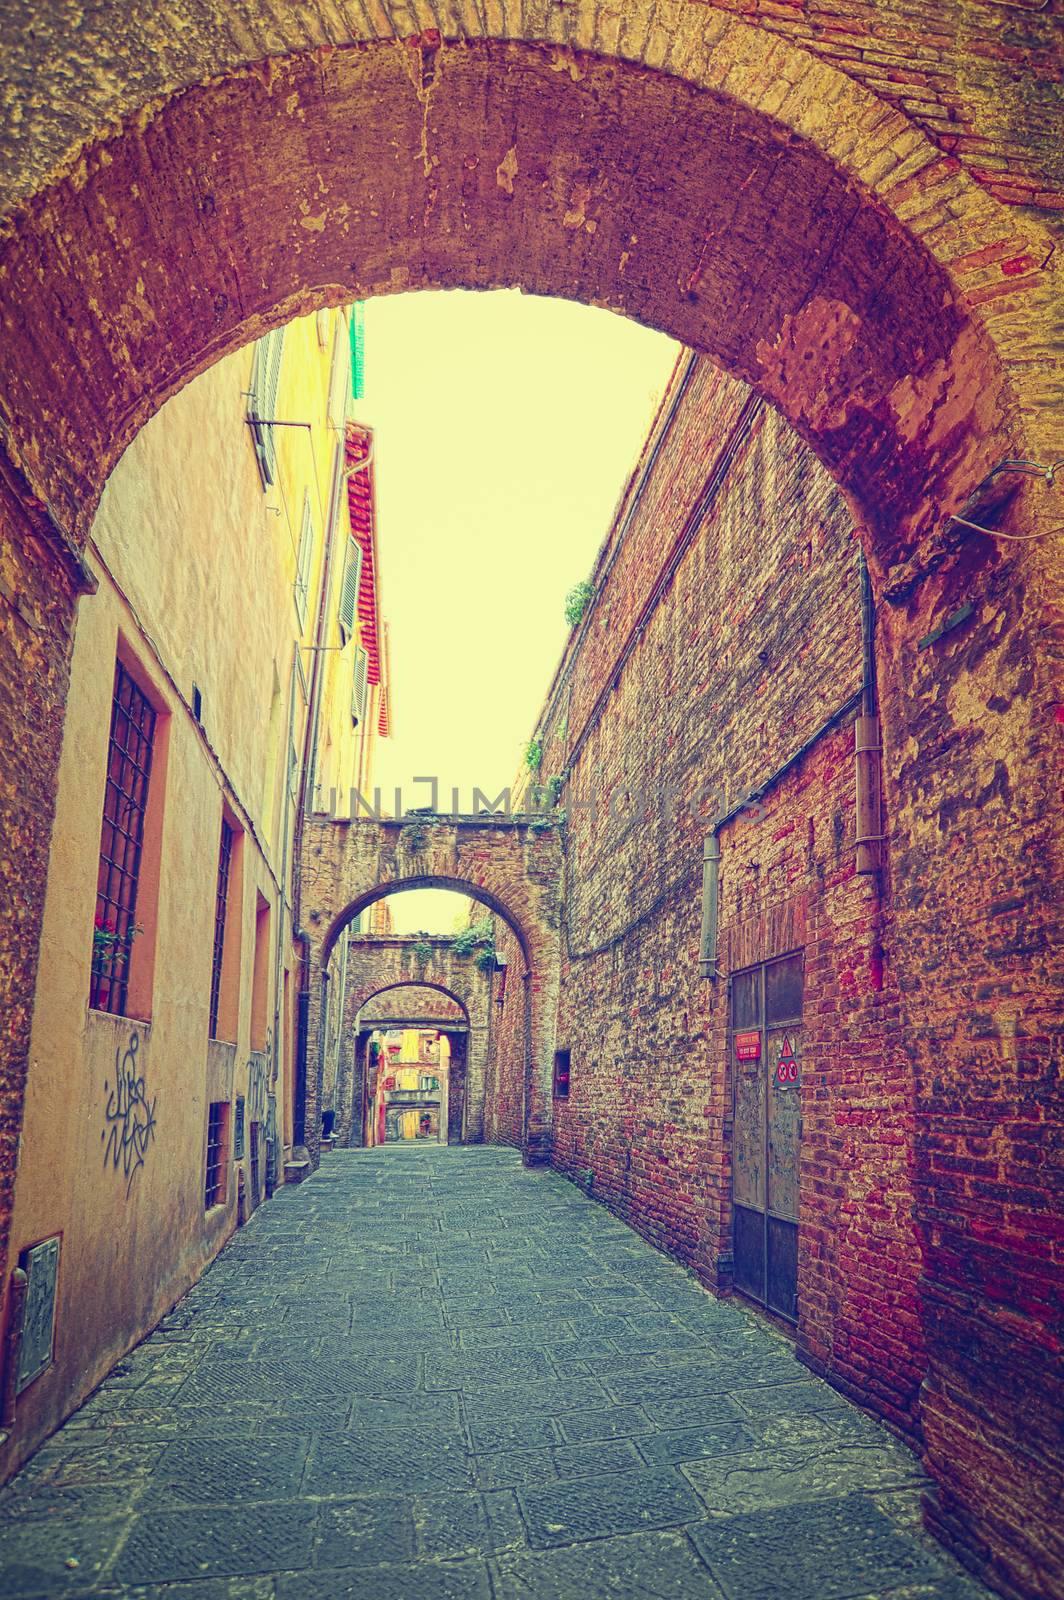 Narrow Street in Italian City of Siena, Instagram Effect